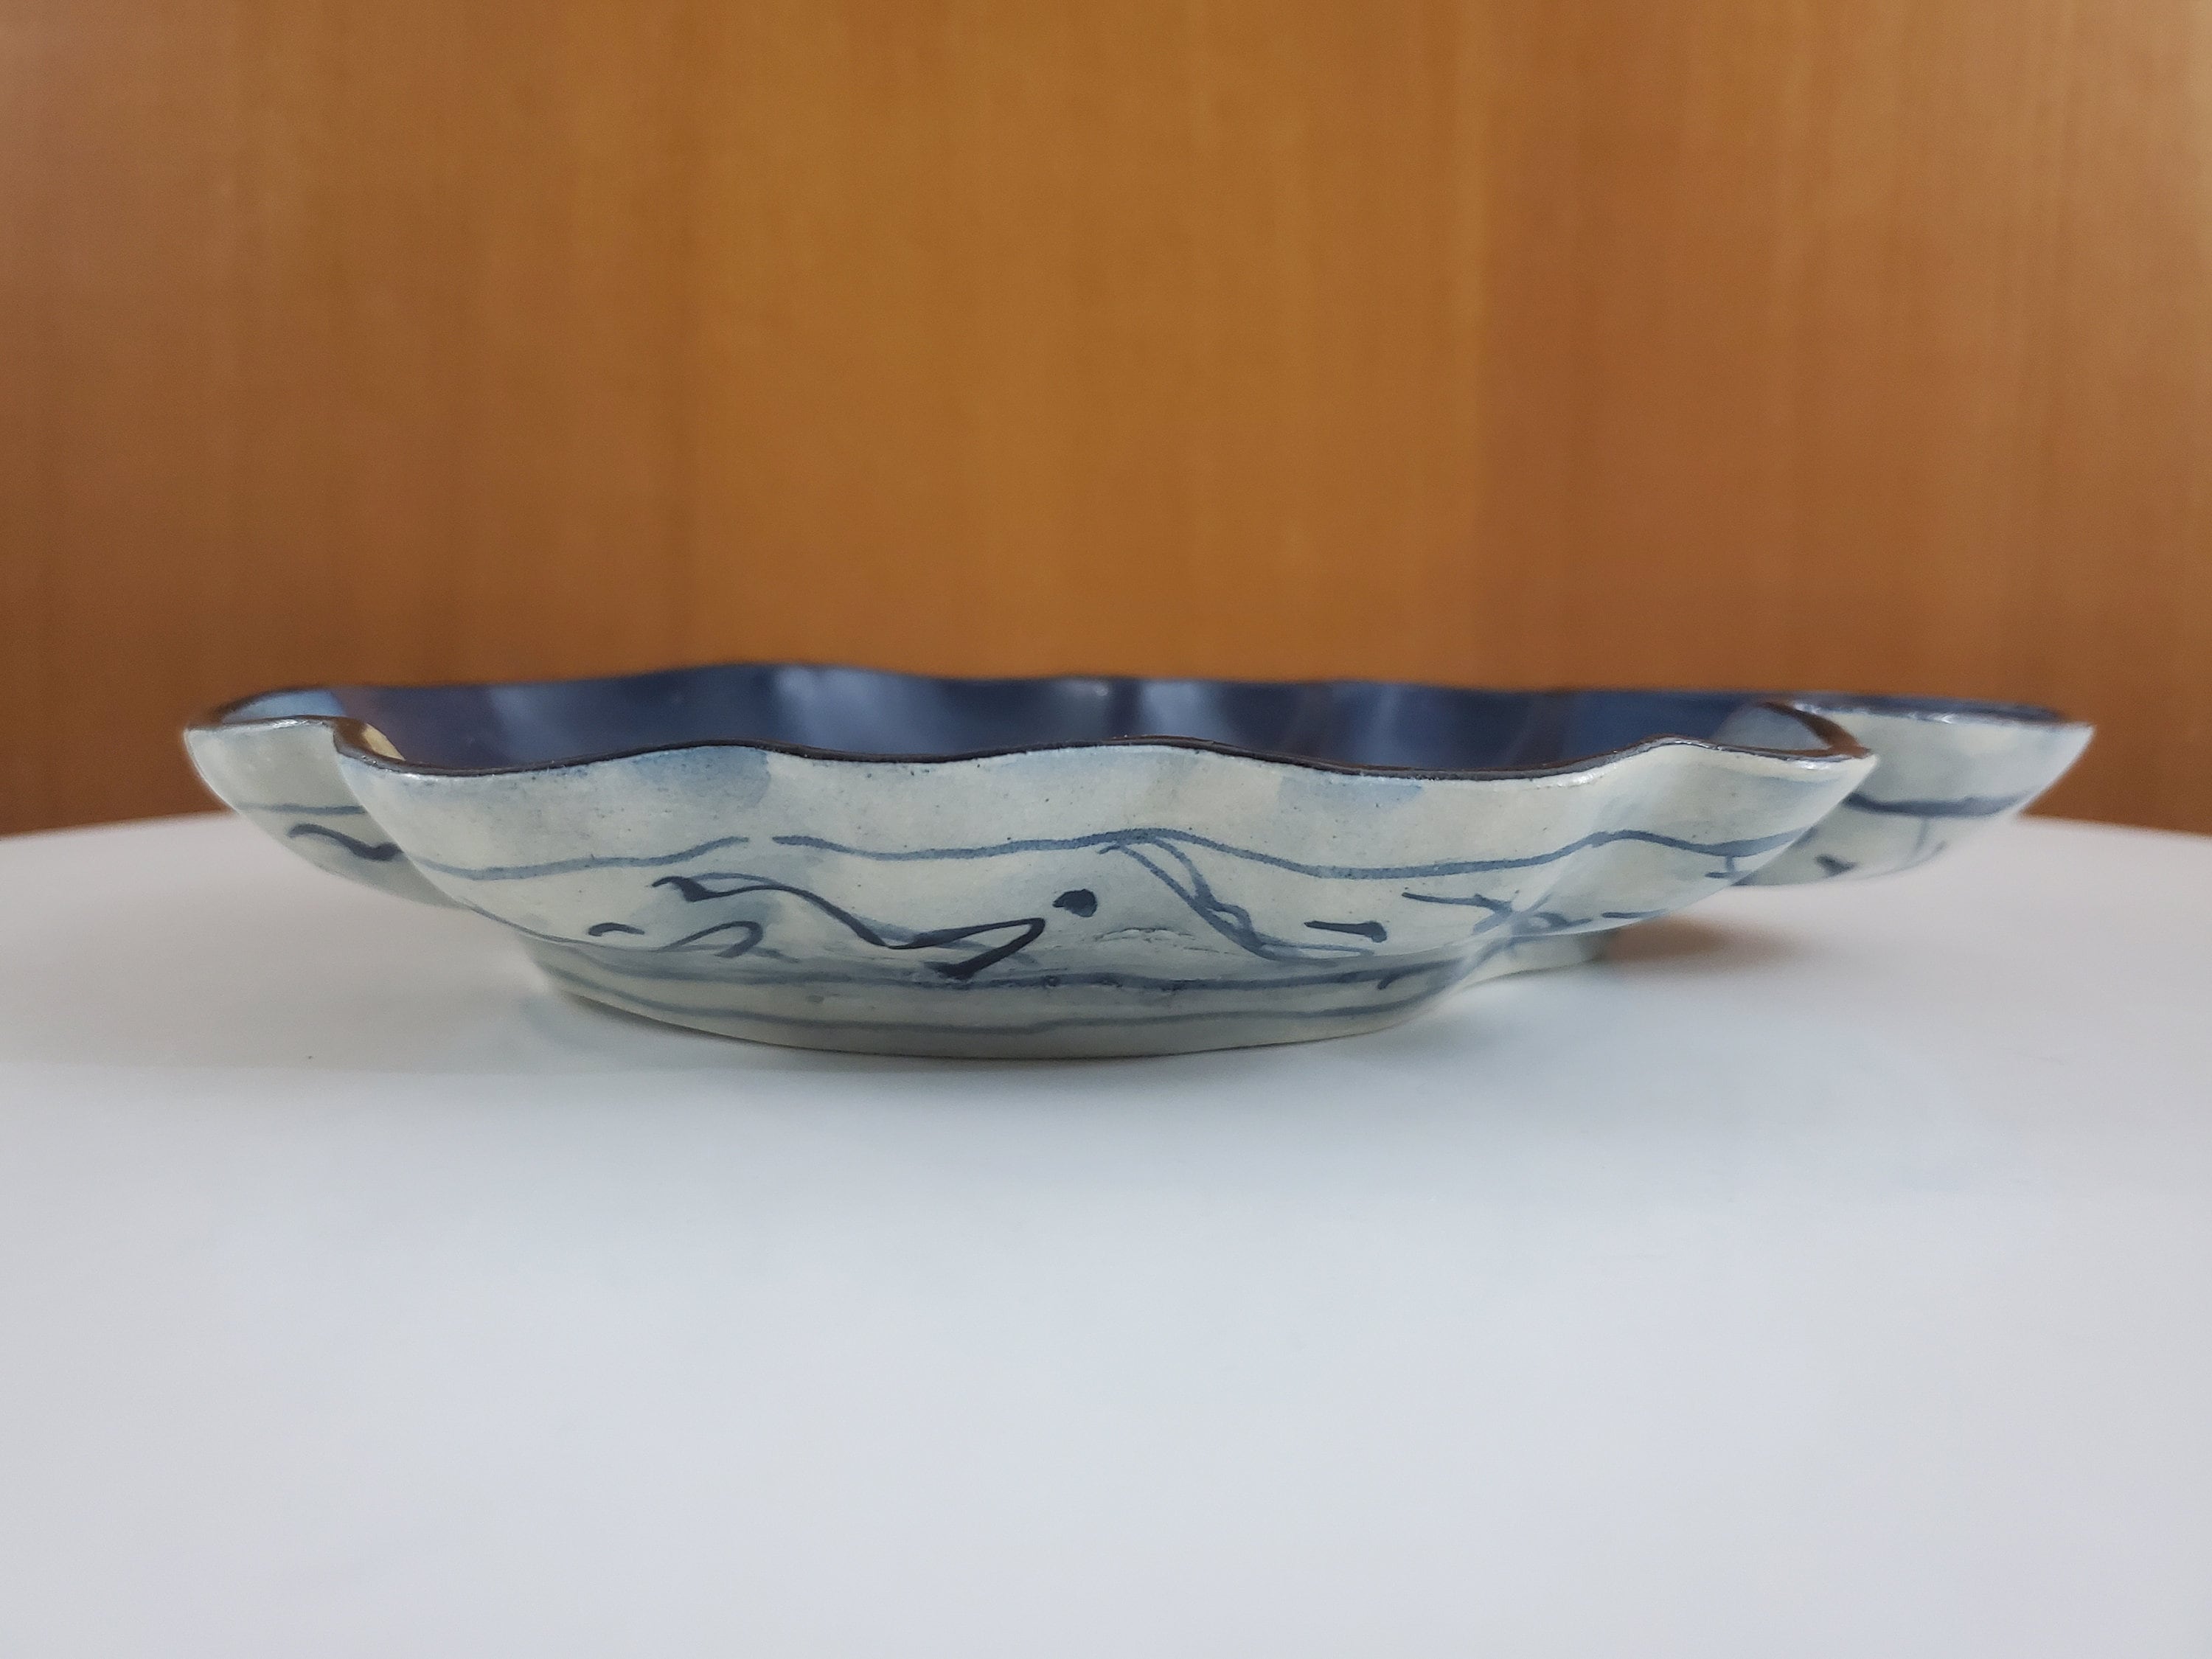 Guangzhou shi kuyi shipin youxian gongsi Ceramic Batter Bowl 2